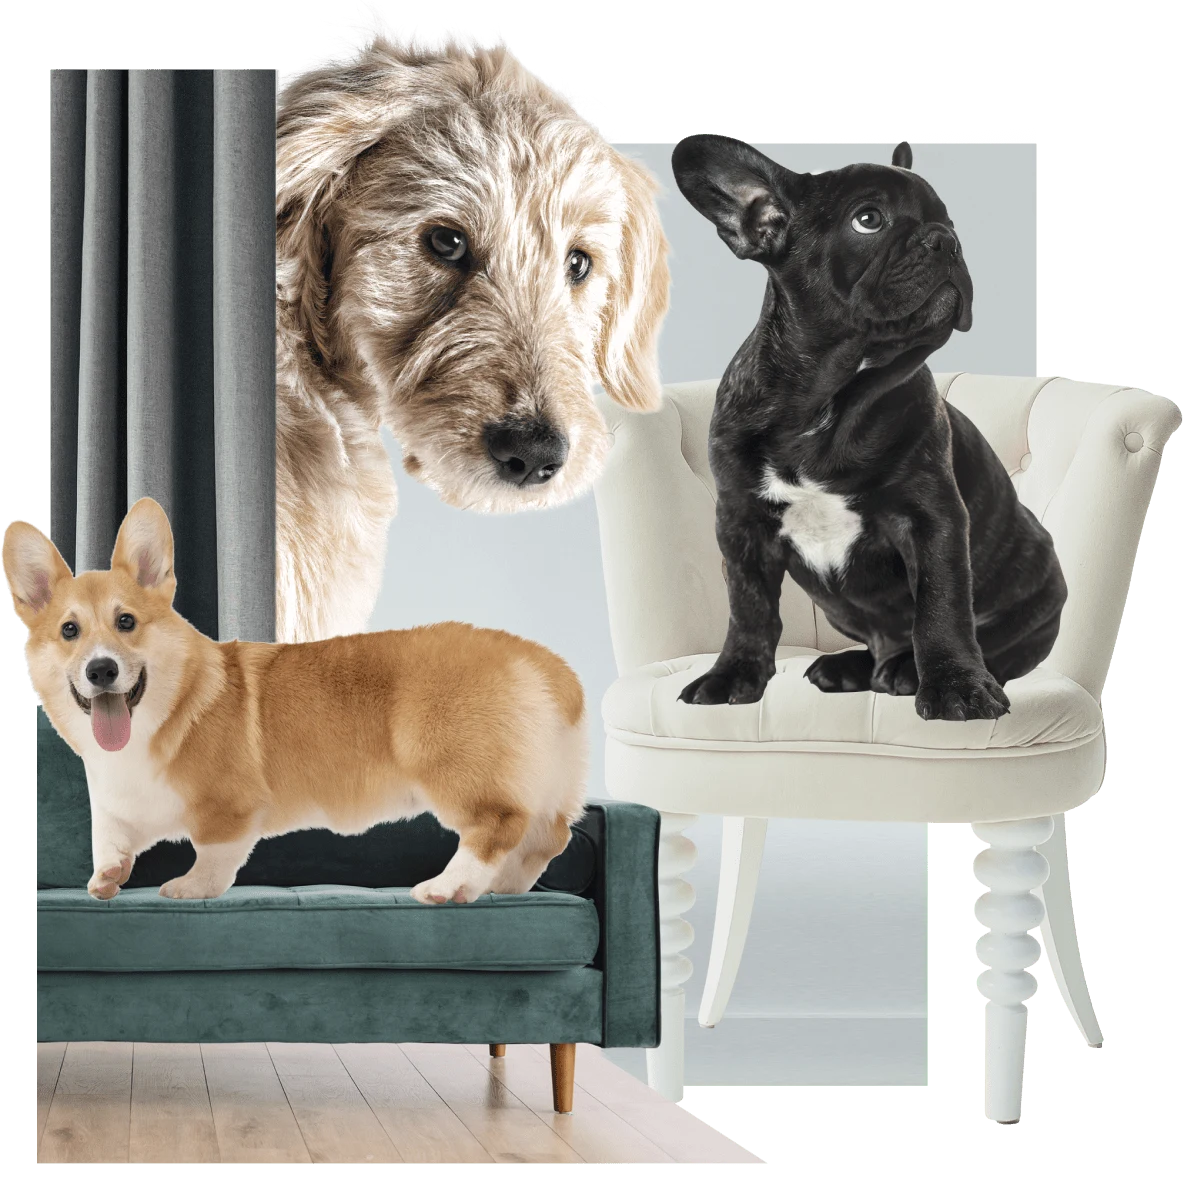 Links steht ein Corgi auf einem grünen Sofa. Rechts sitzt eine französische Bulldogge auf einem weißen Stuhl. Im Hintergrund streckt ein irischer Wolfshund seinen Kopf hinter einem grünen Vorhang hervor.